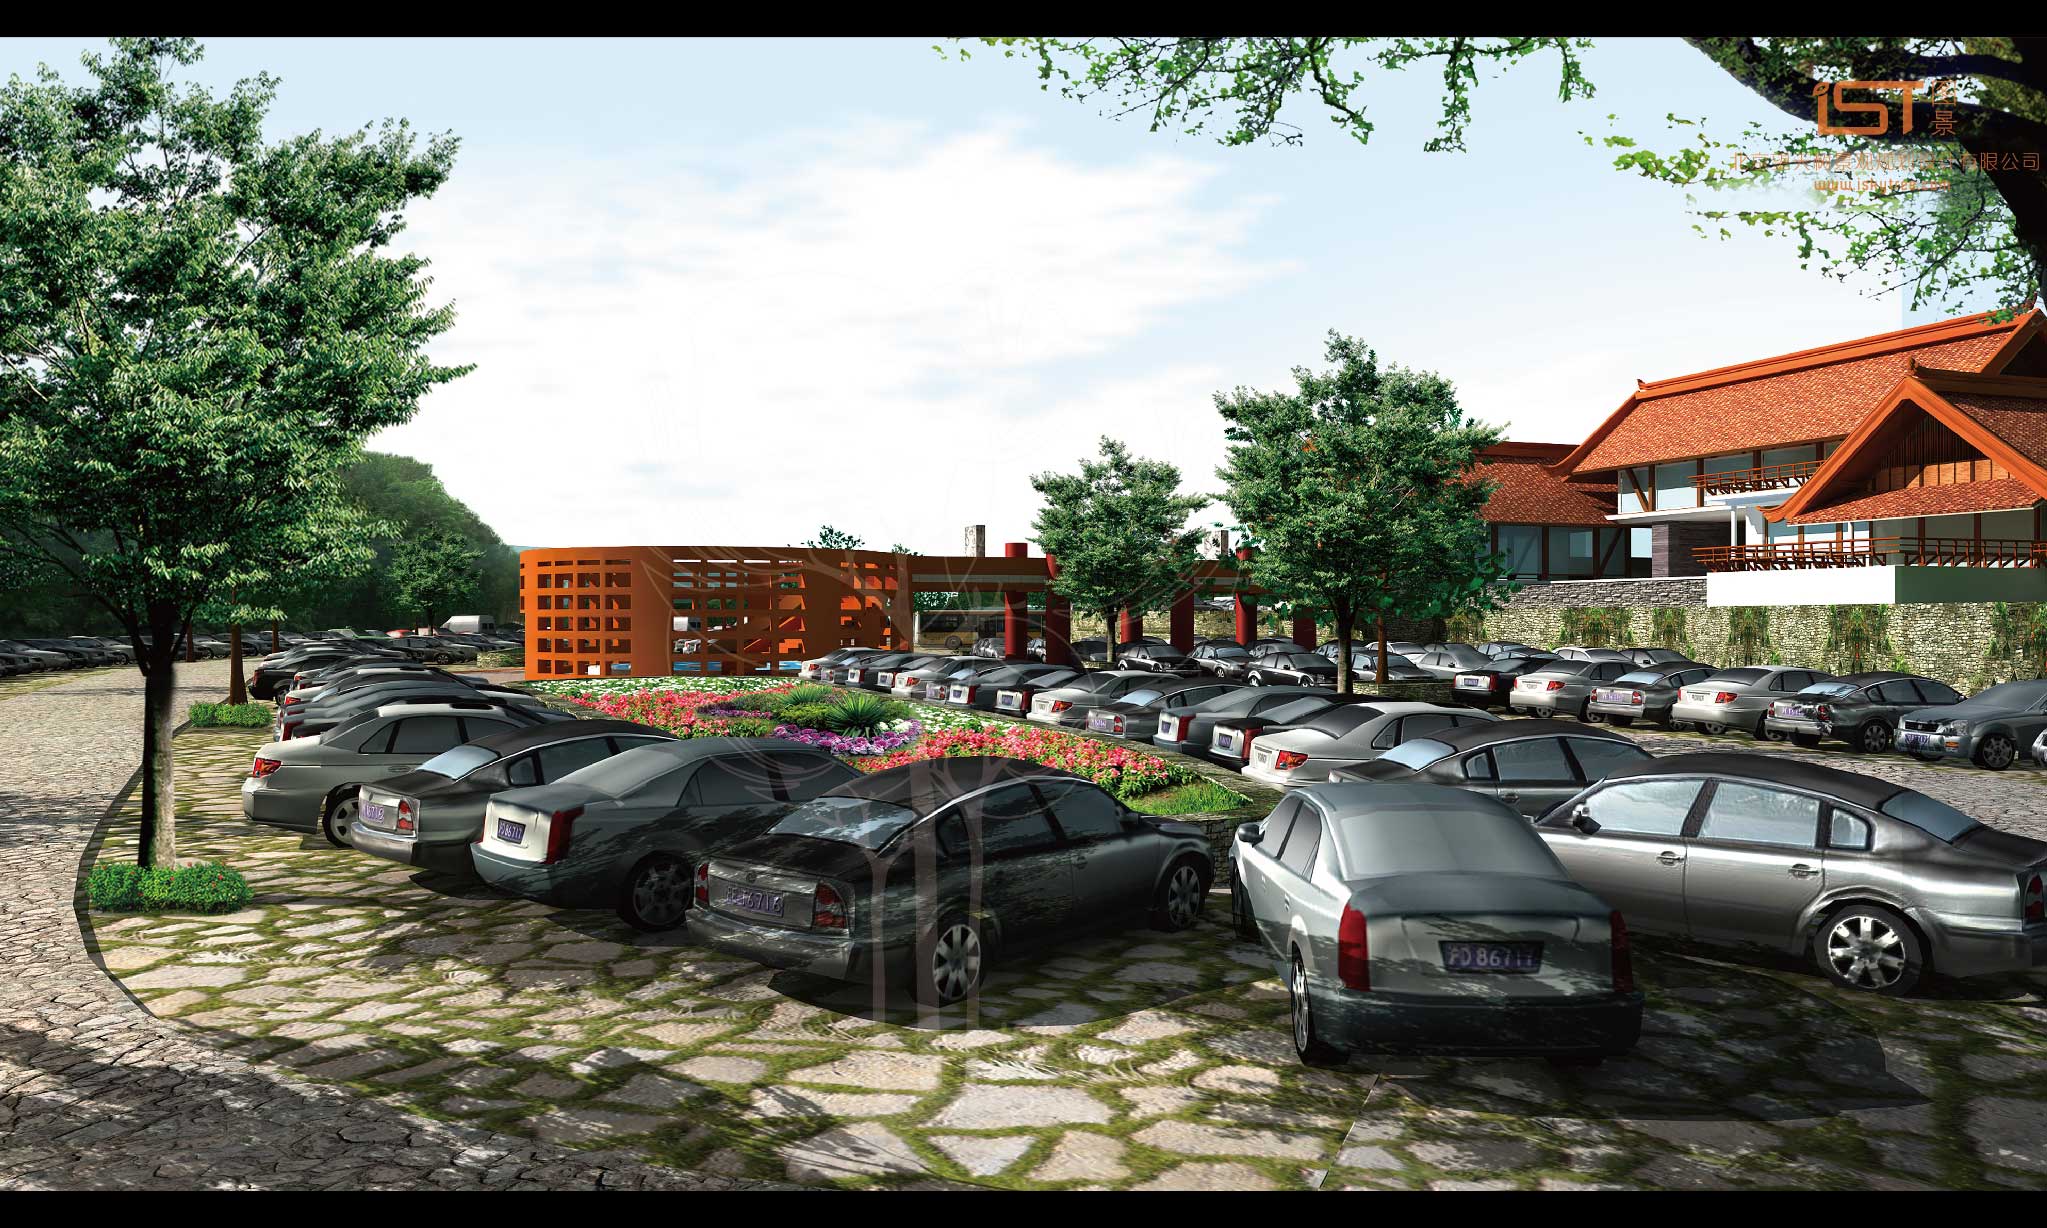 游客中心、生態停車場設計方案效果表現